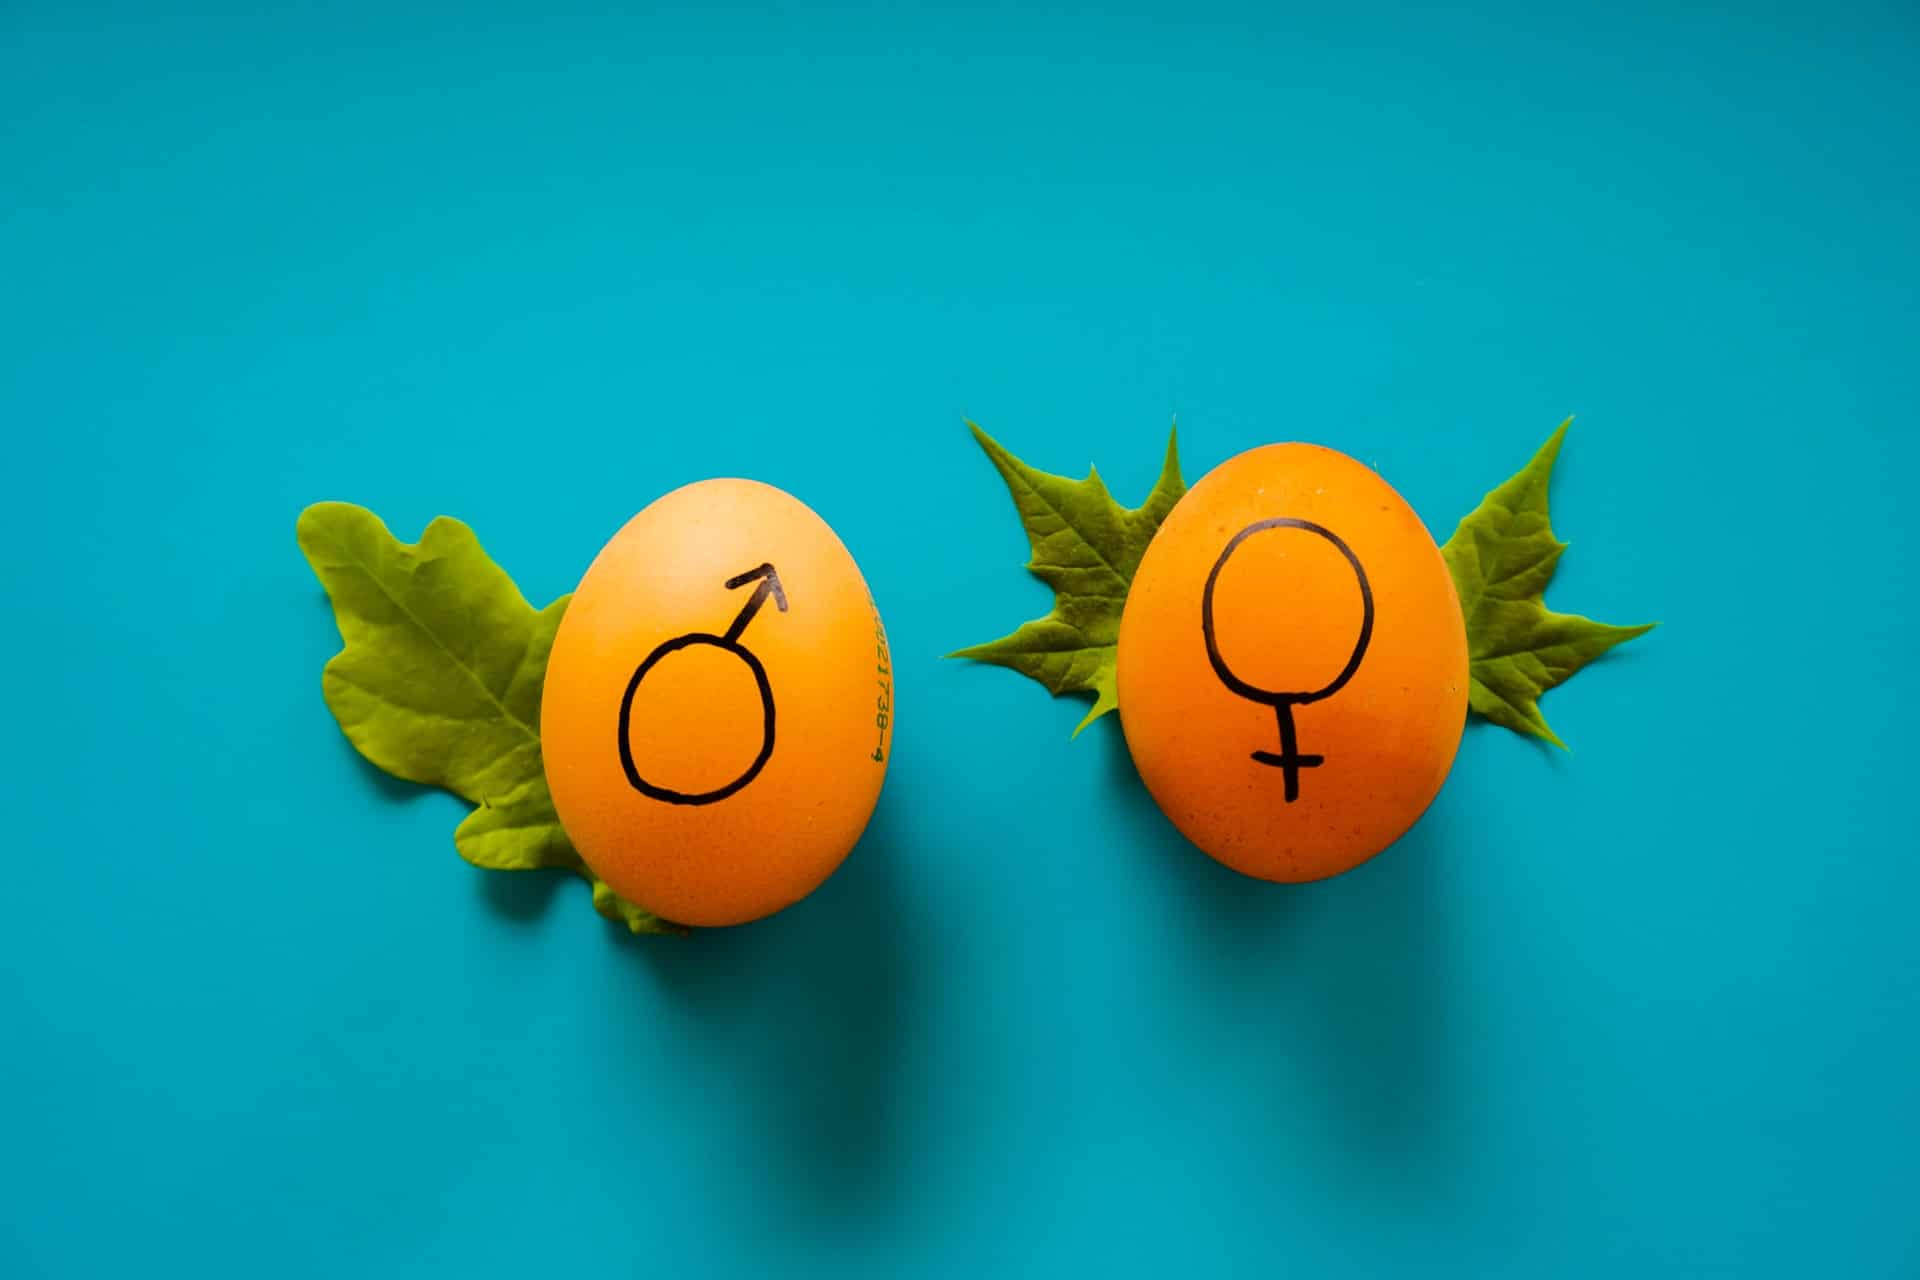 Frutas representando os gêneros feminino e masculino